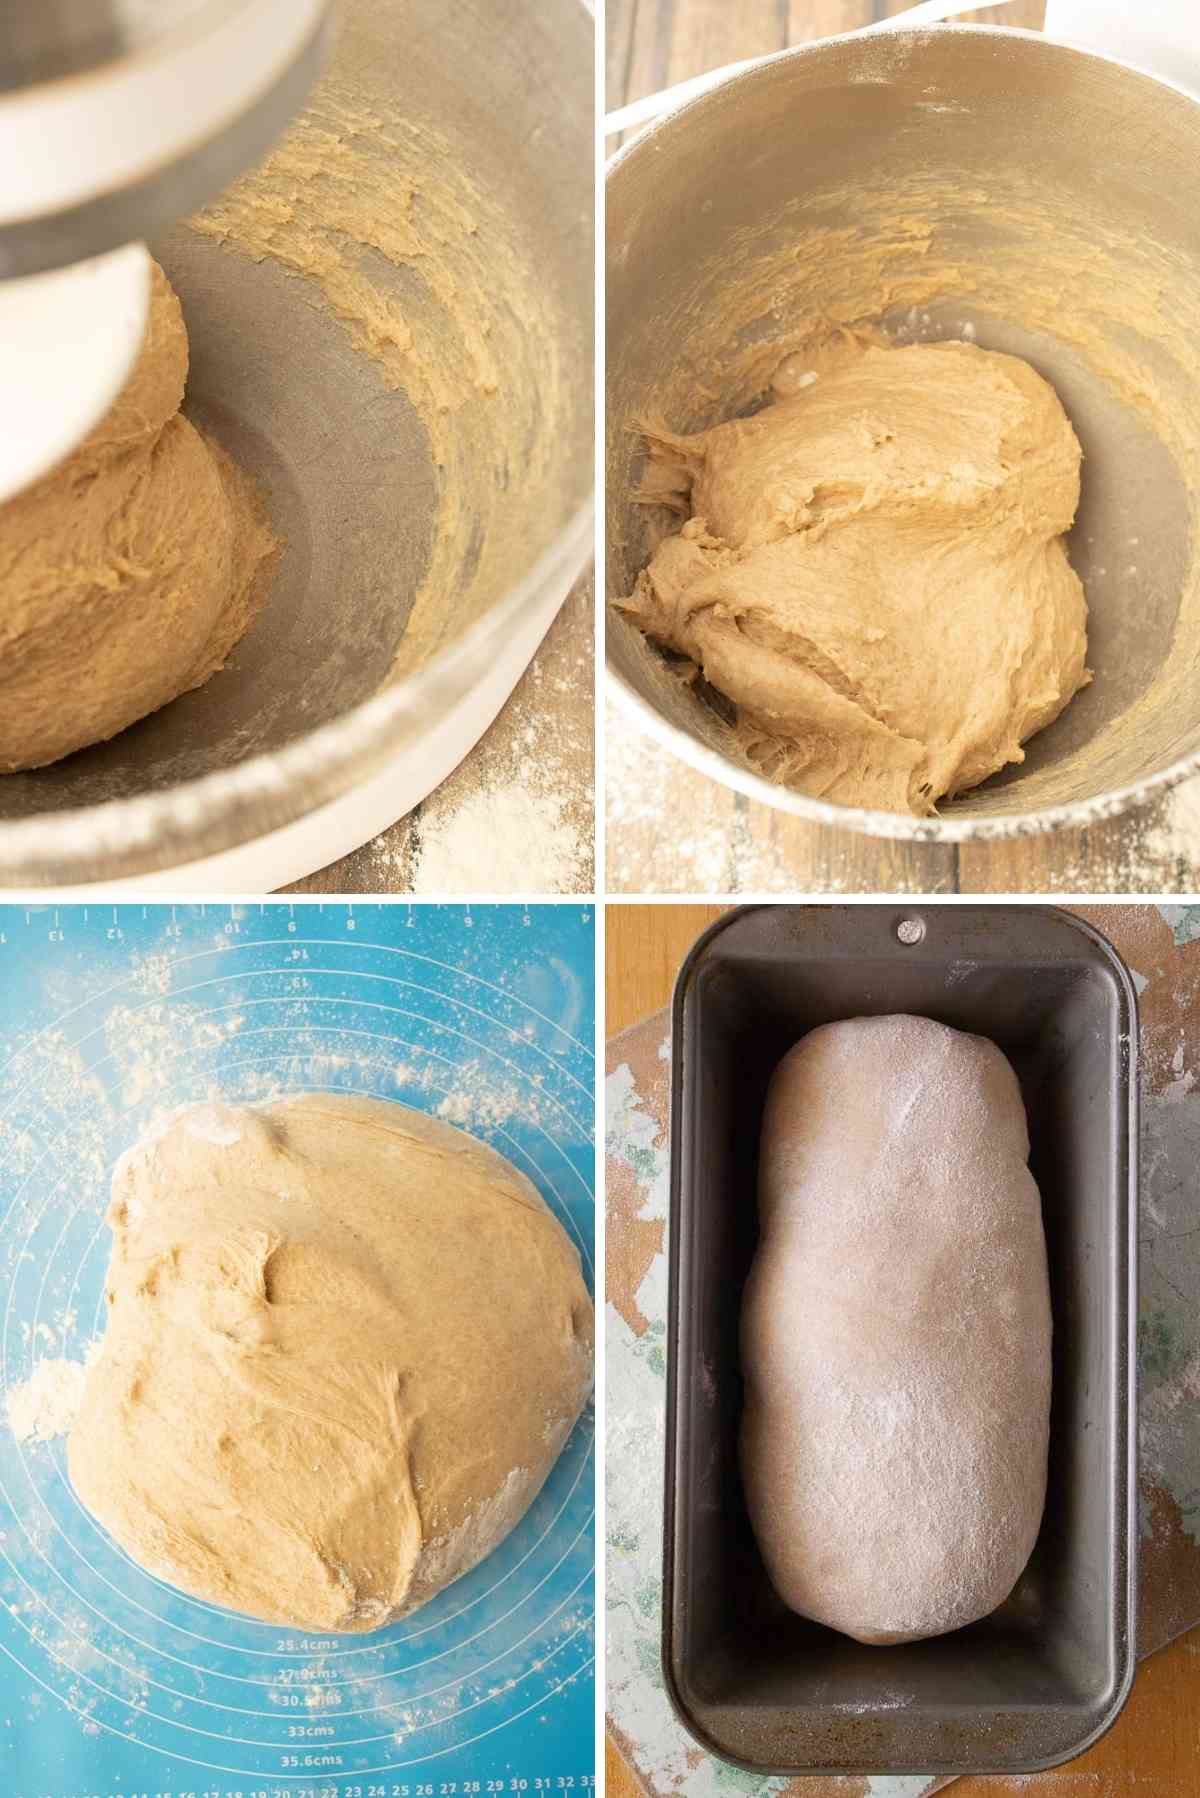 Shape dough into a loaf and bake.